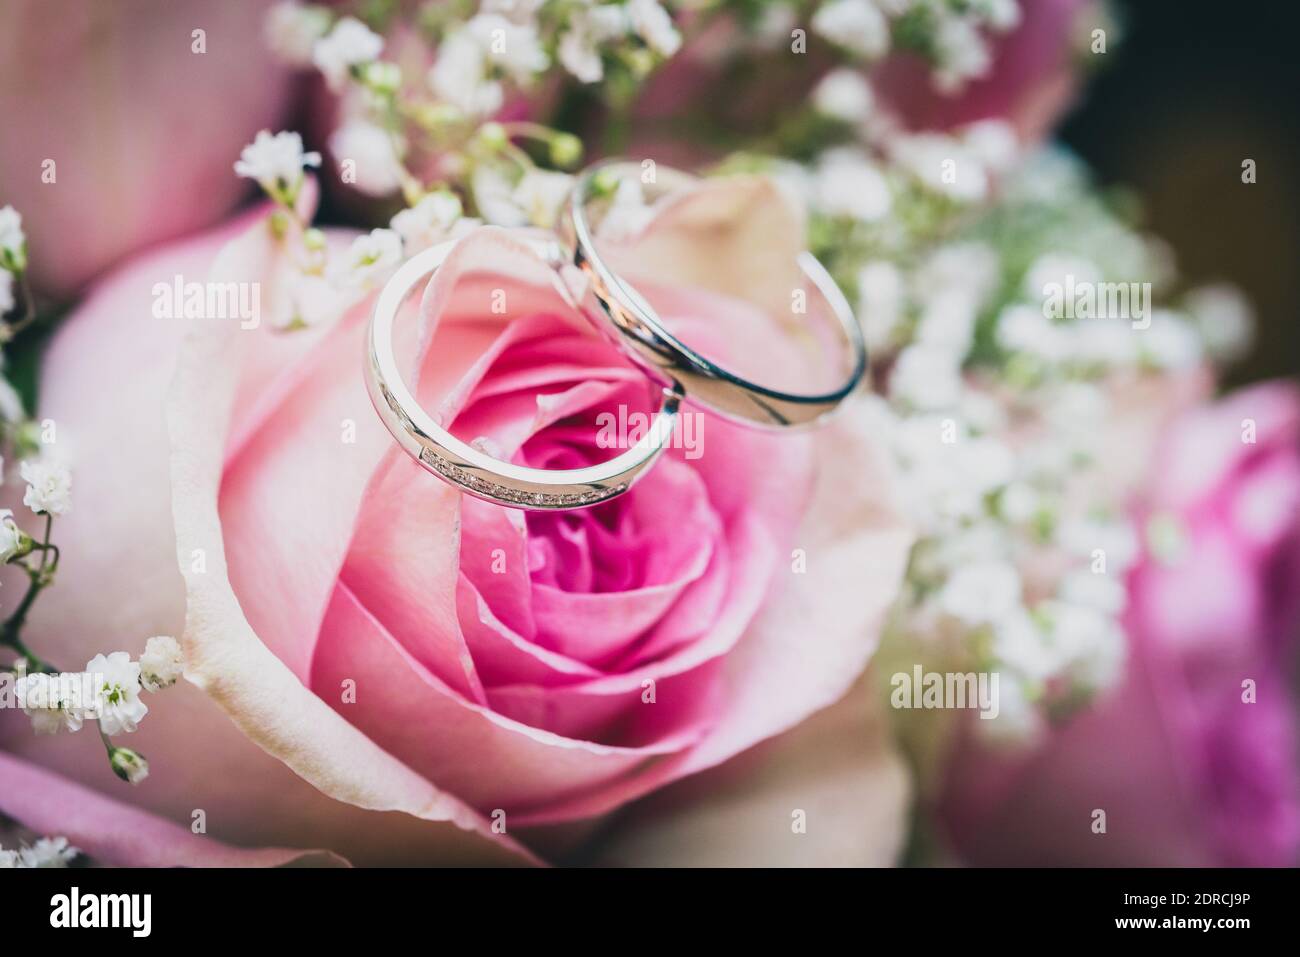 Eheringe Mit Rosen Im Hintergrund Stockfotos Und Bilder Kaufen Alamy